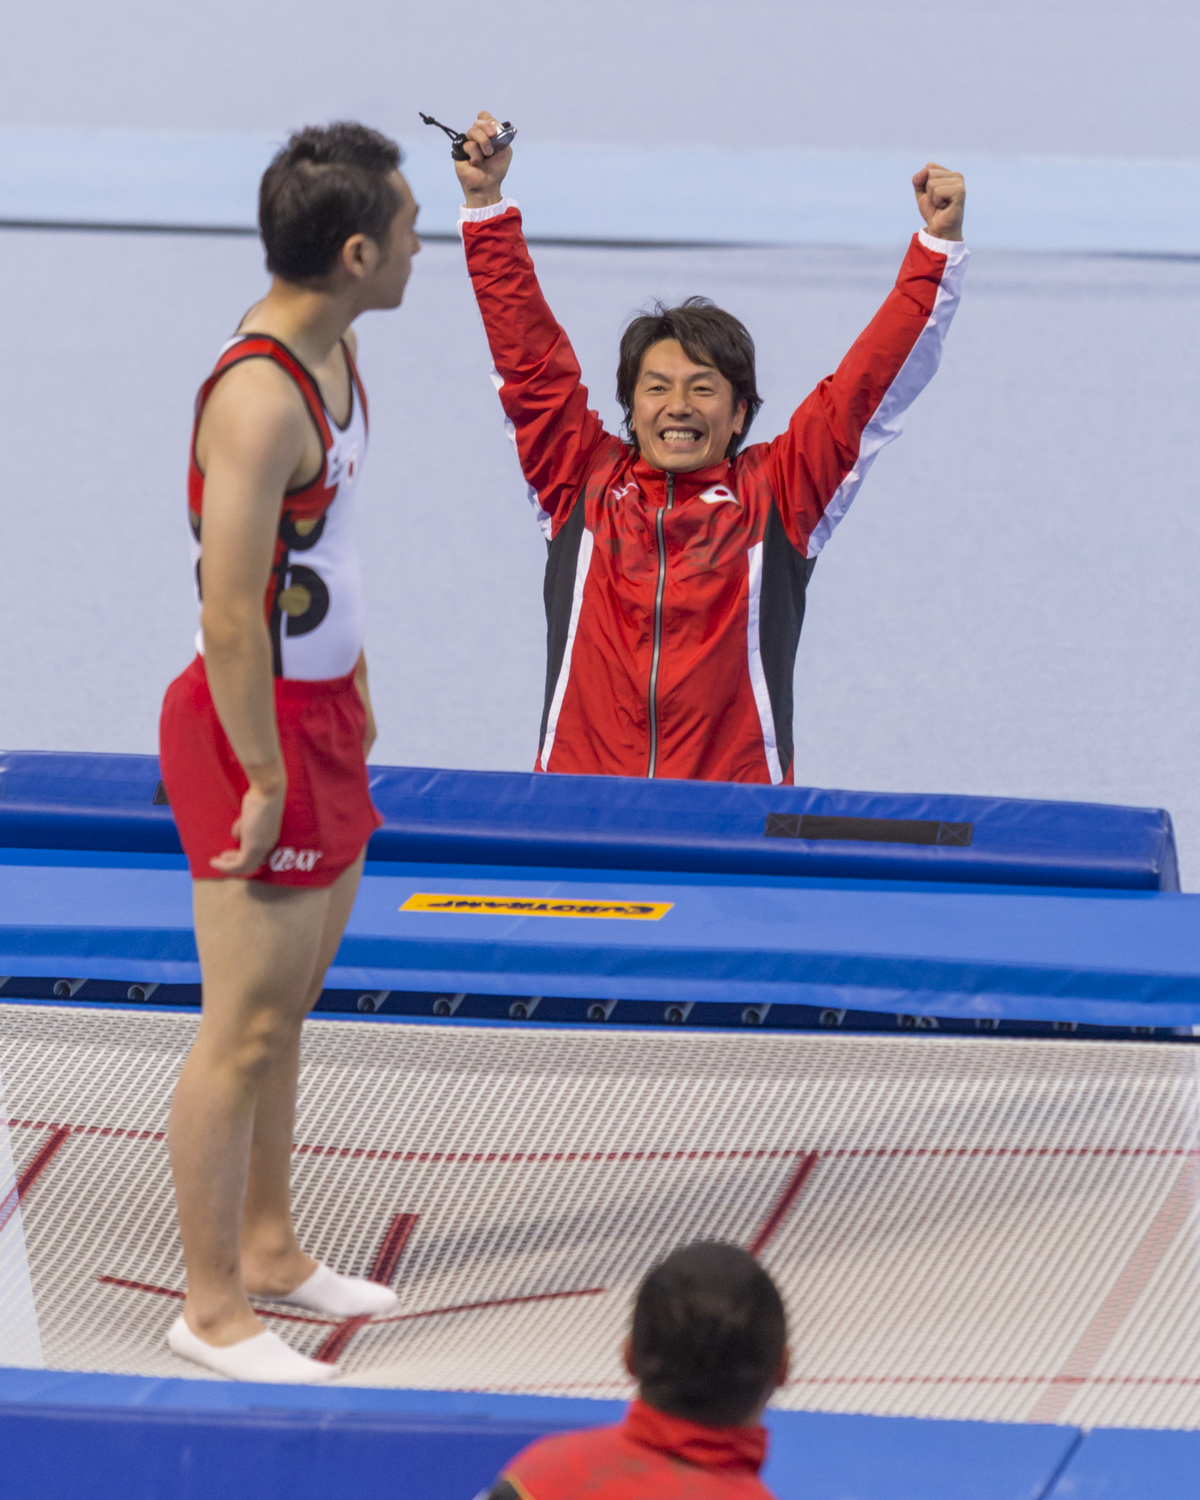 Photographie couleur du japonais Tetsuya Sotomura et de son entraineur montrant sa joie après le passage de Trampline de son gymnaste